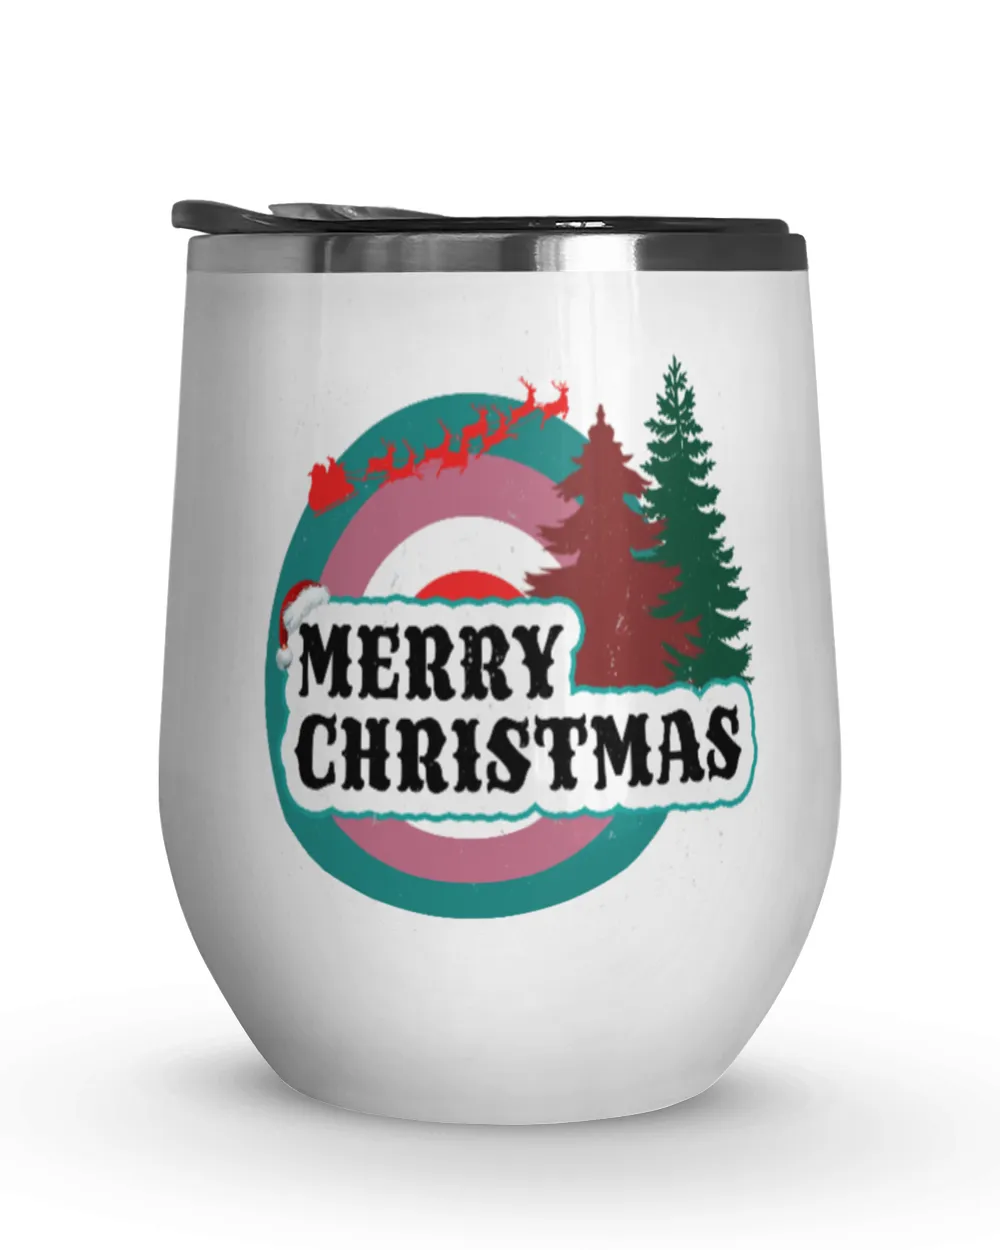 Retro Merry Christmas Magic Mug 11oz